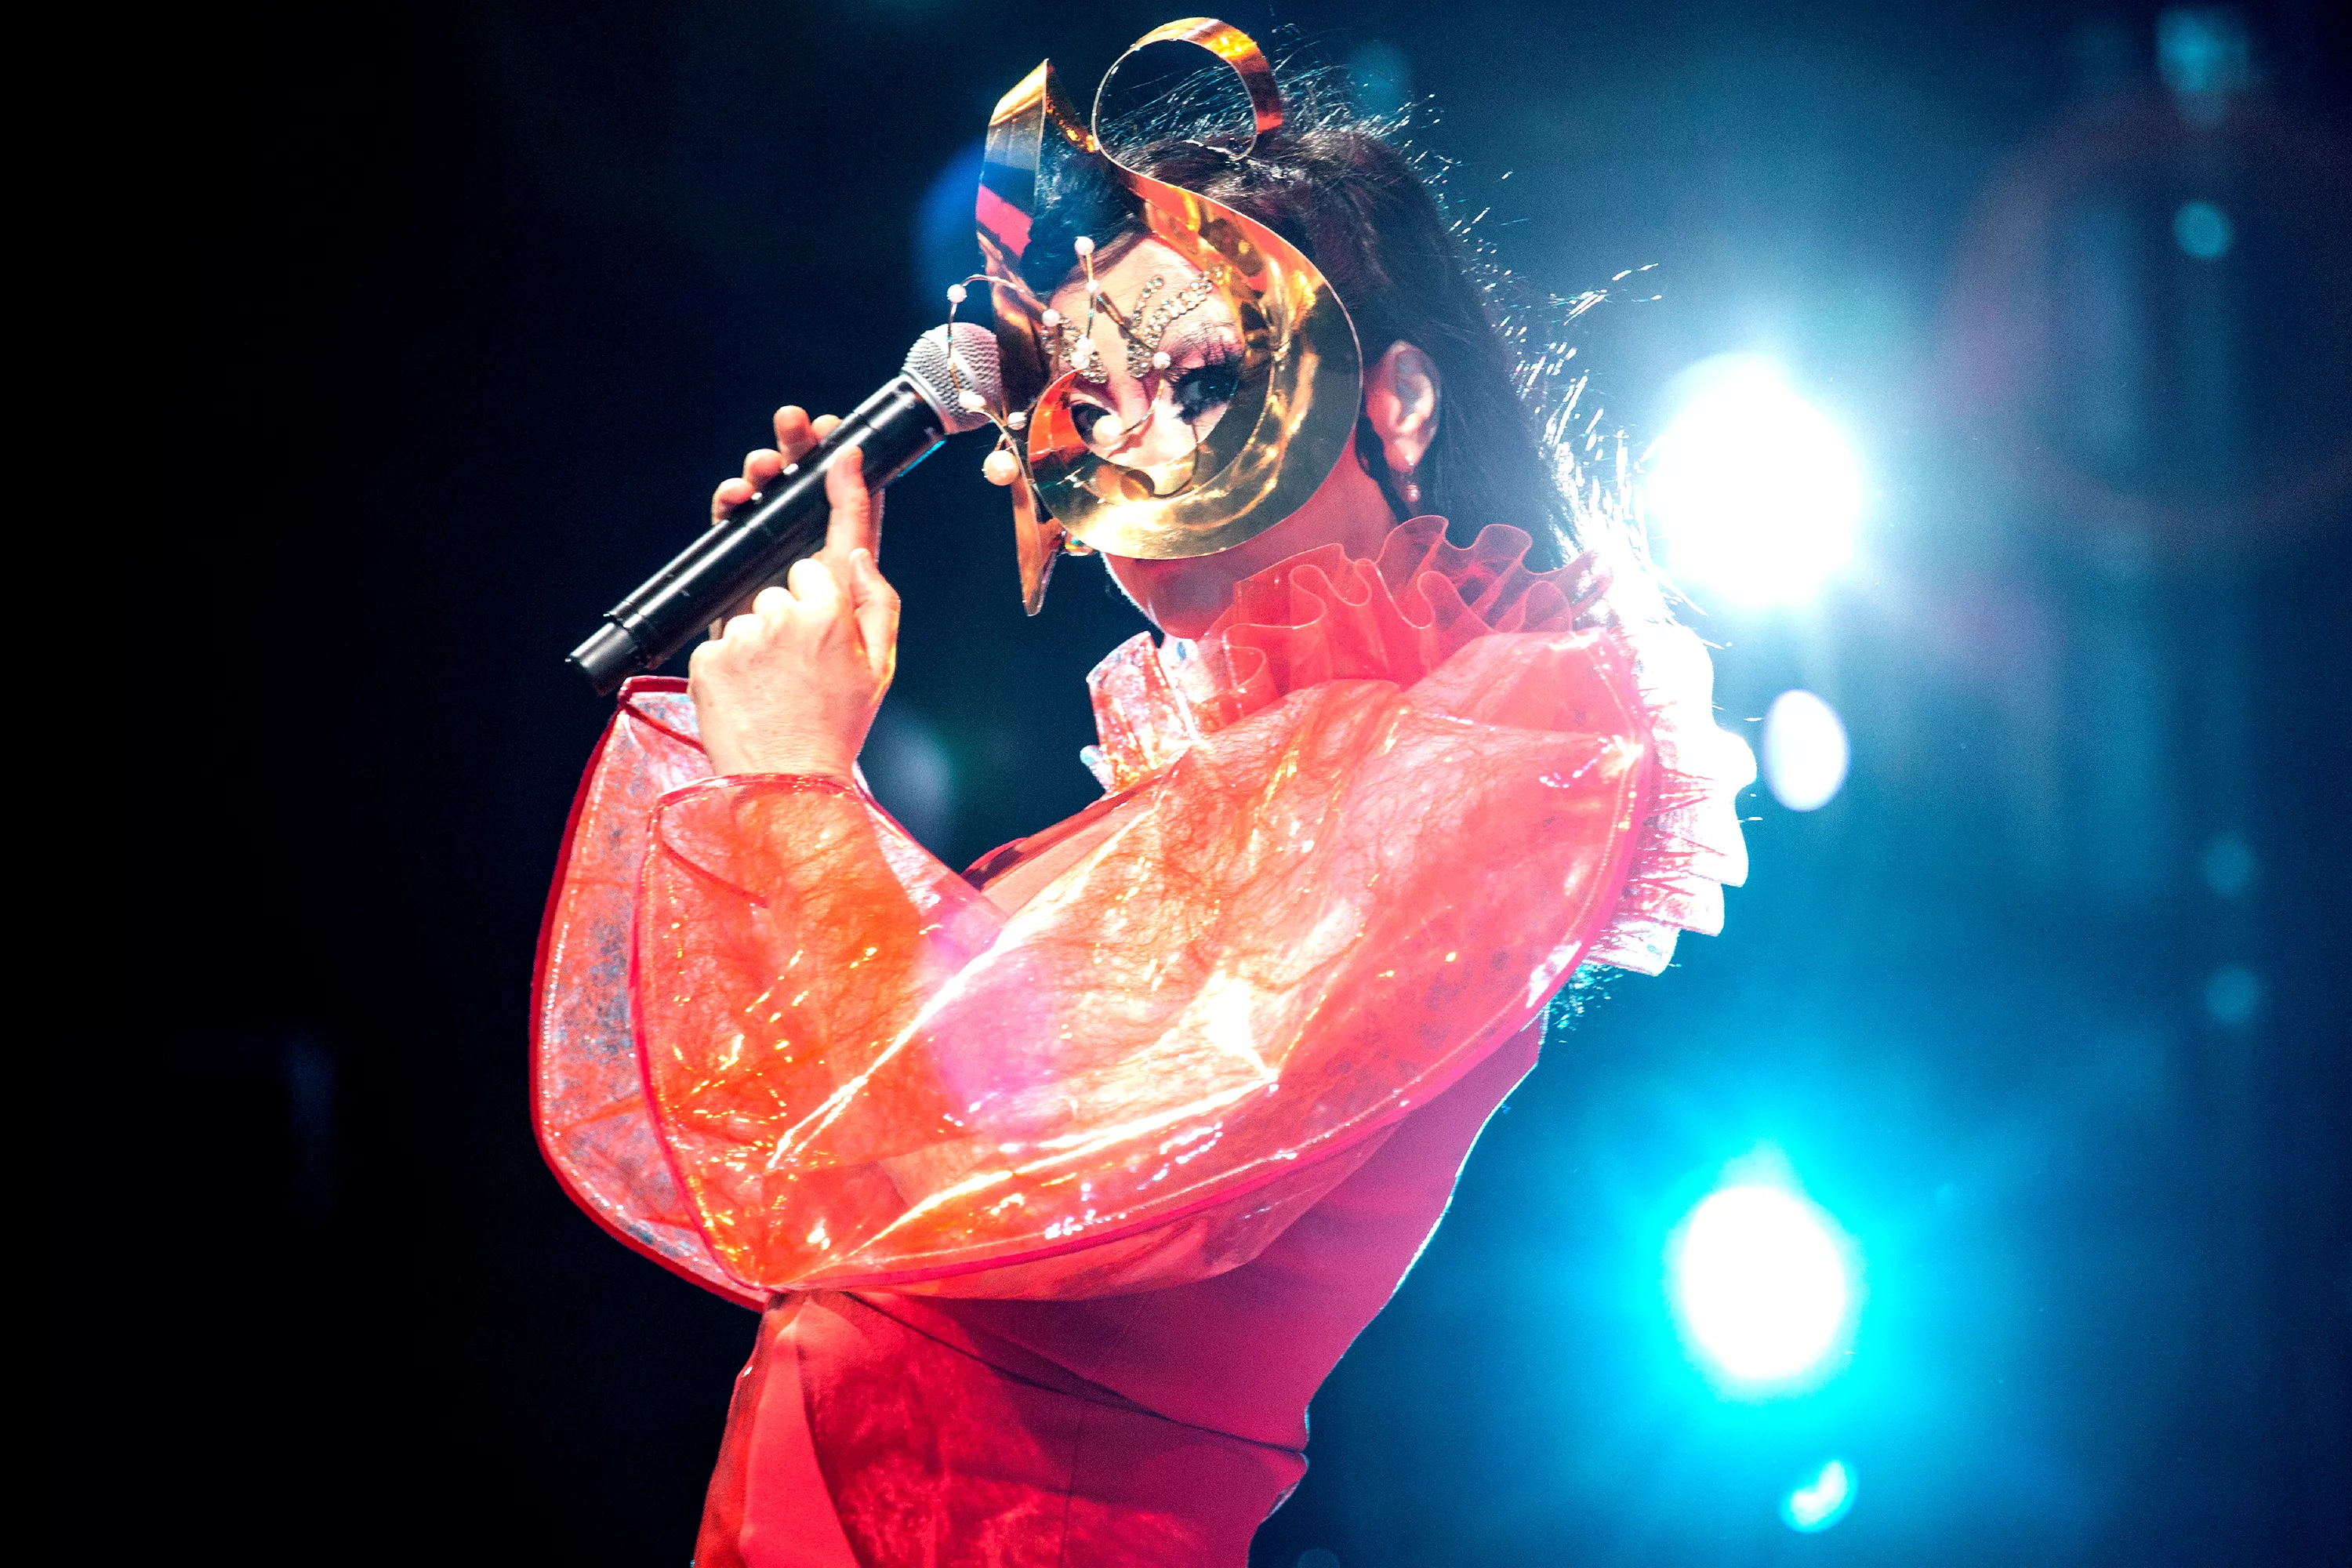 Björk till Sverige med teatershow/konsert